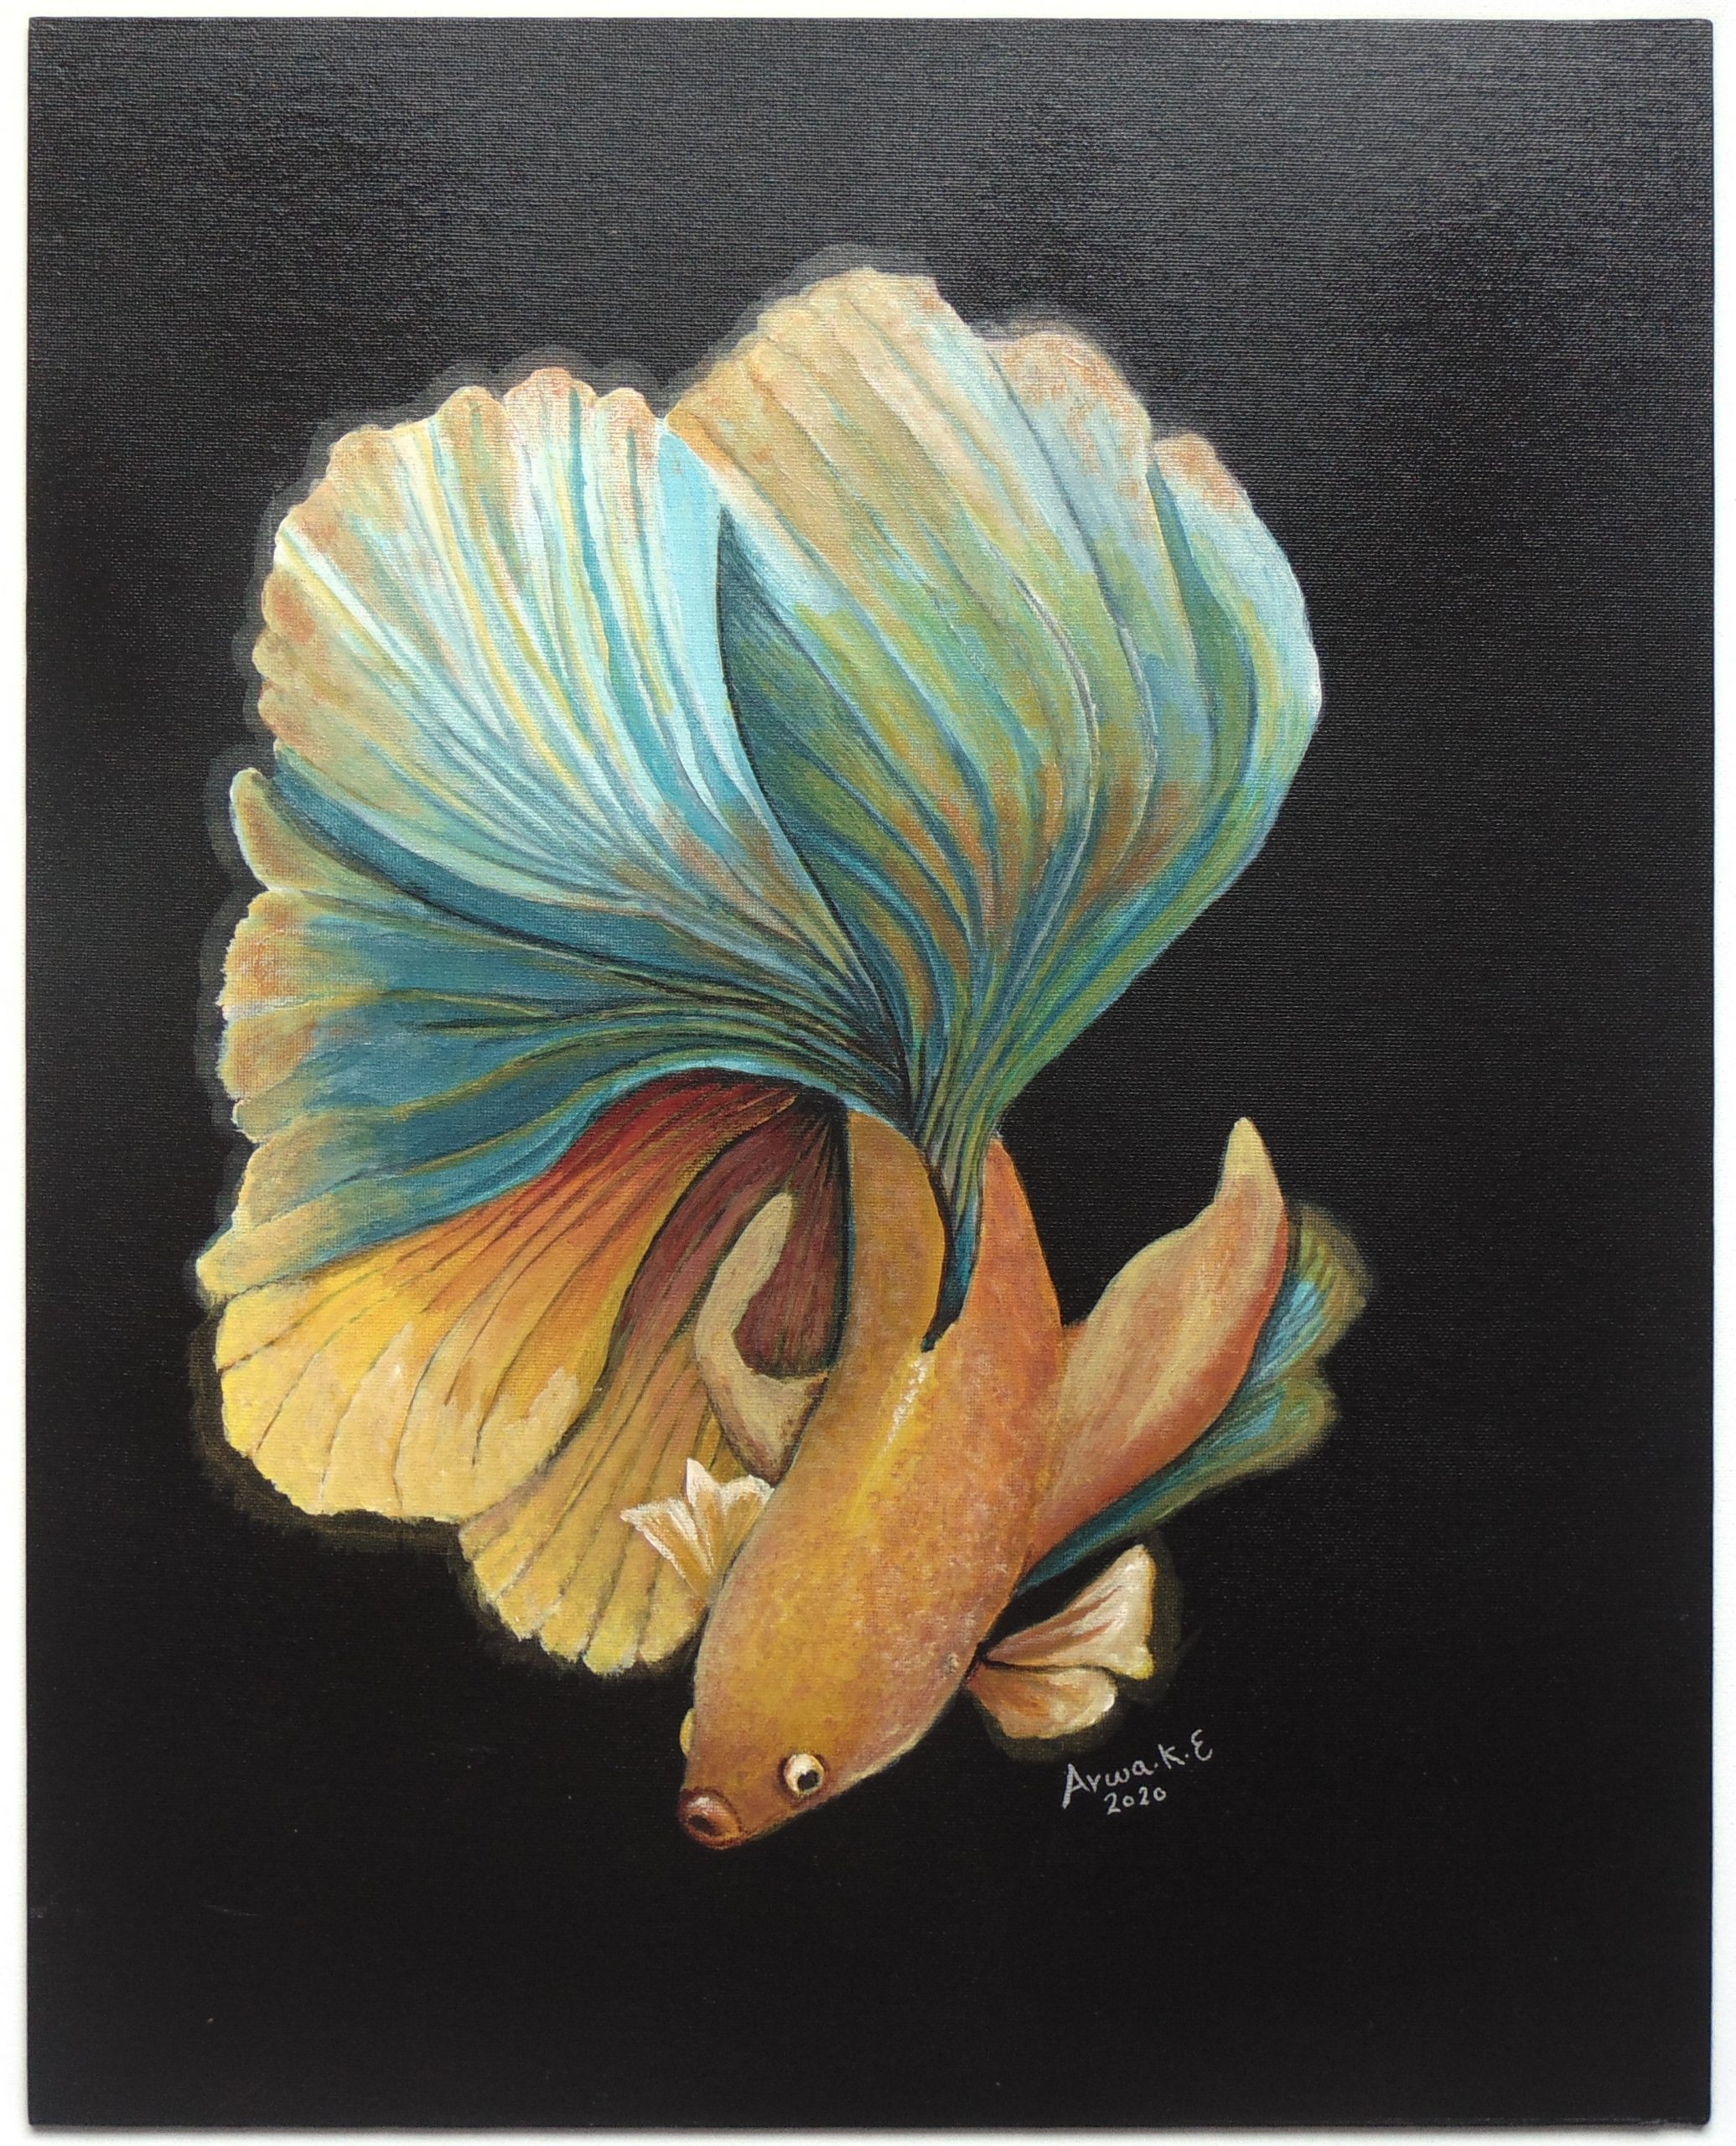 Elegant Fish by Arwa Khadr ElBoraei $1835 Acrylic on Canvas 16x20 inch